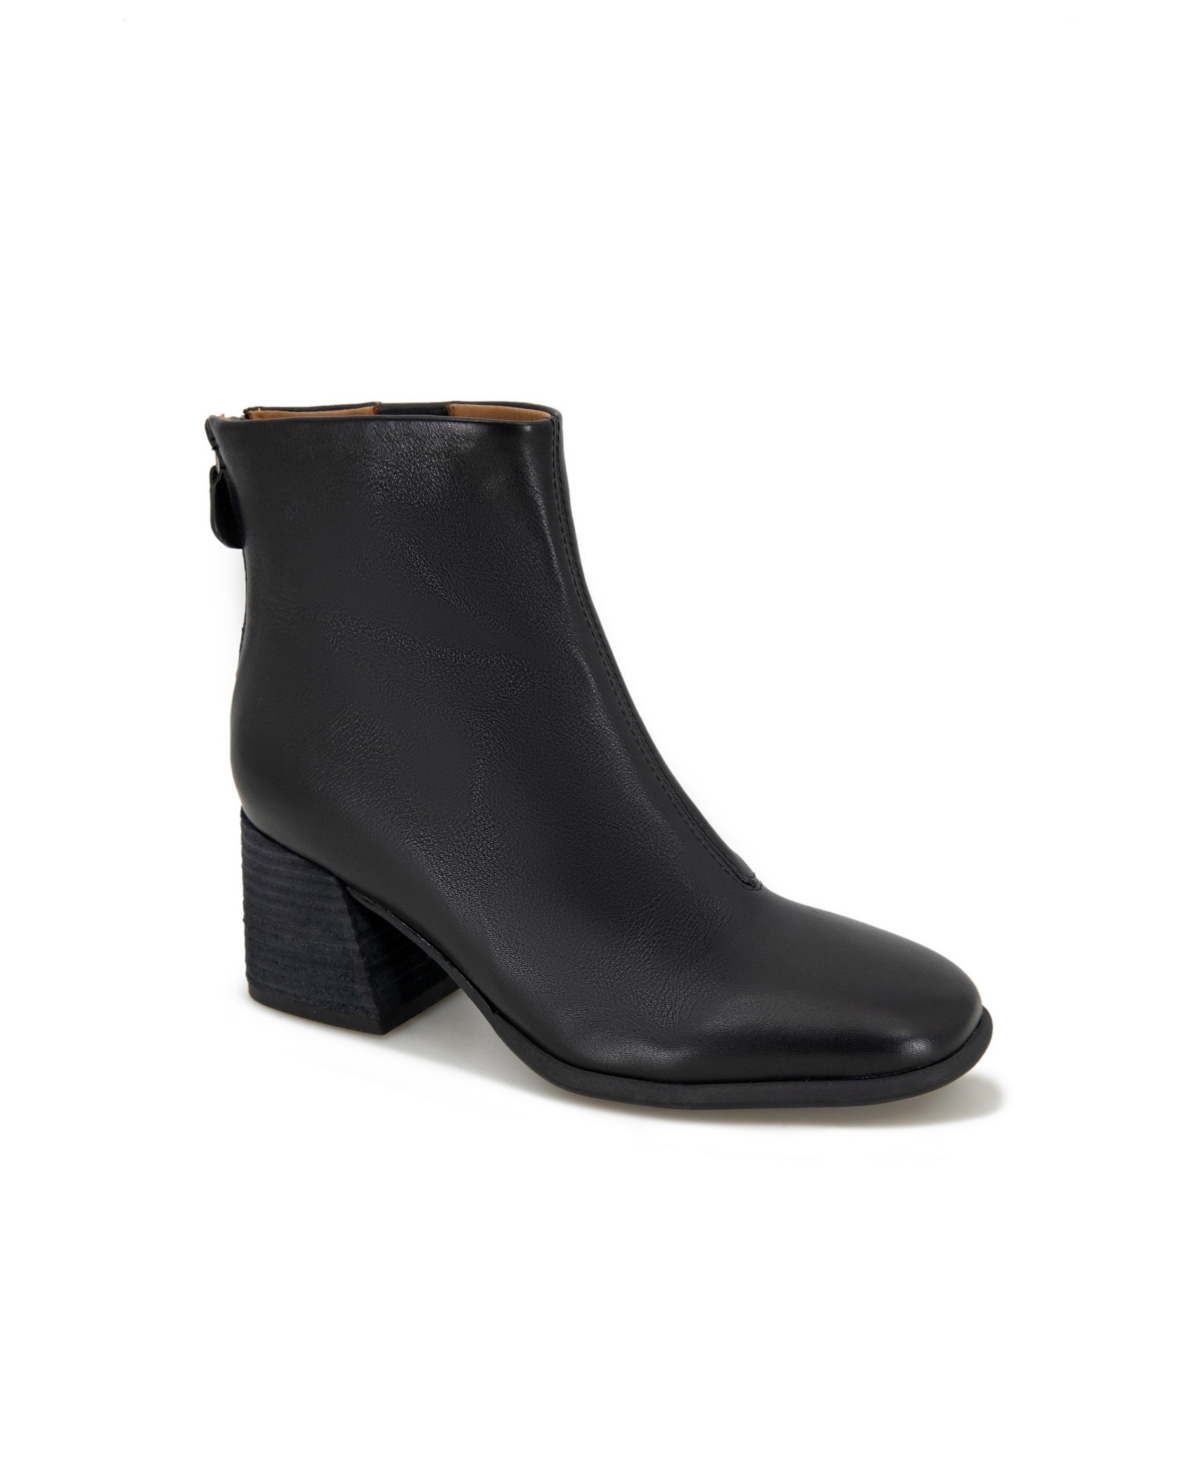 Women's Sandryn Zip Boots - Black Leather